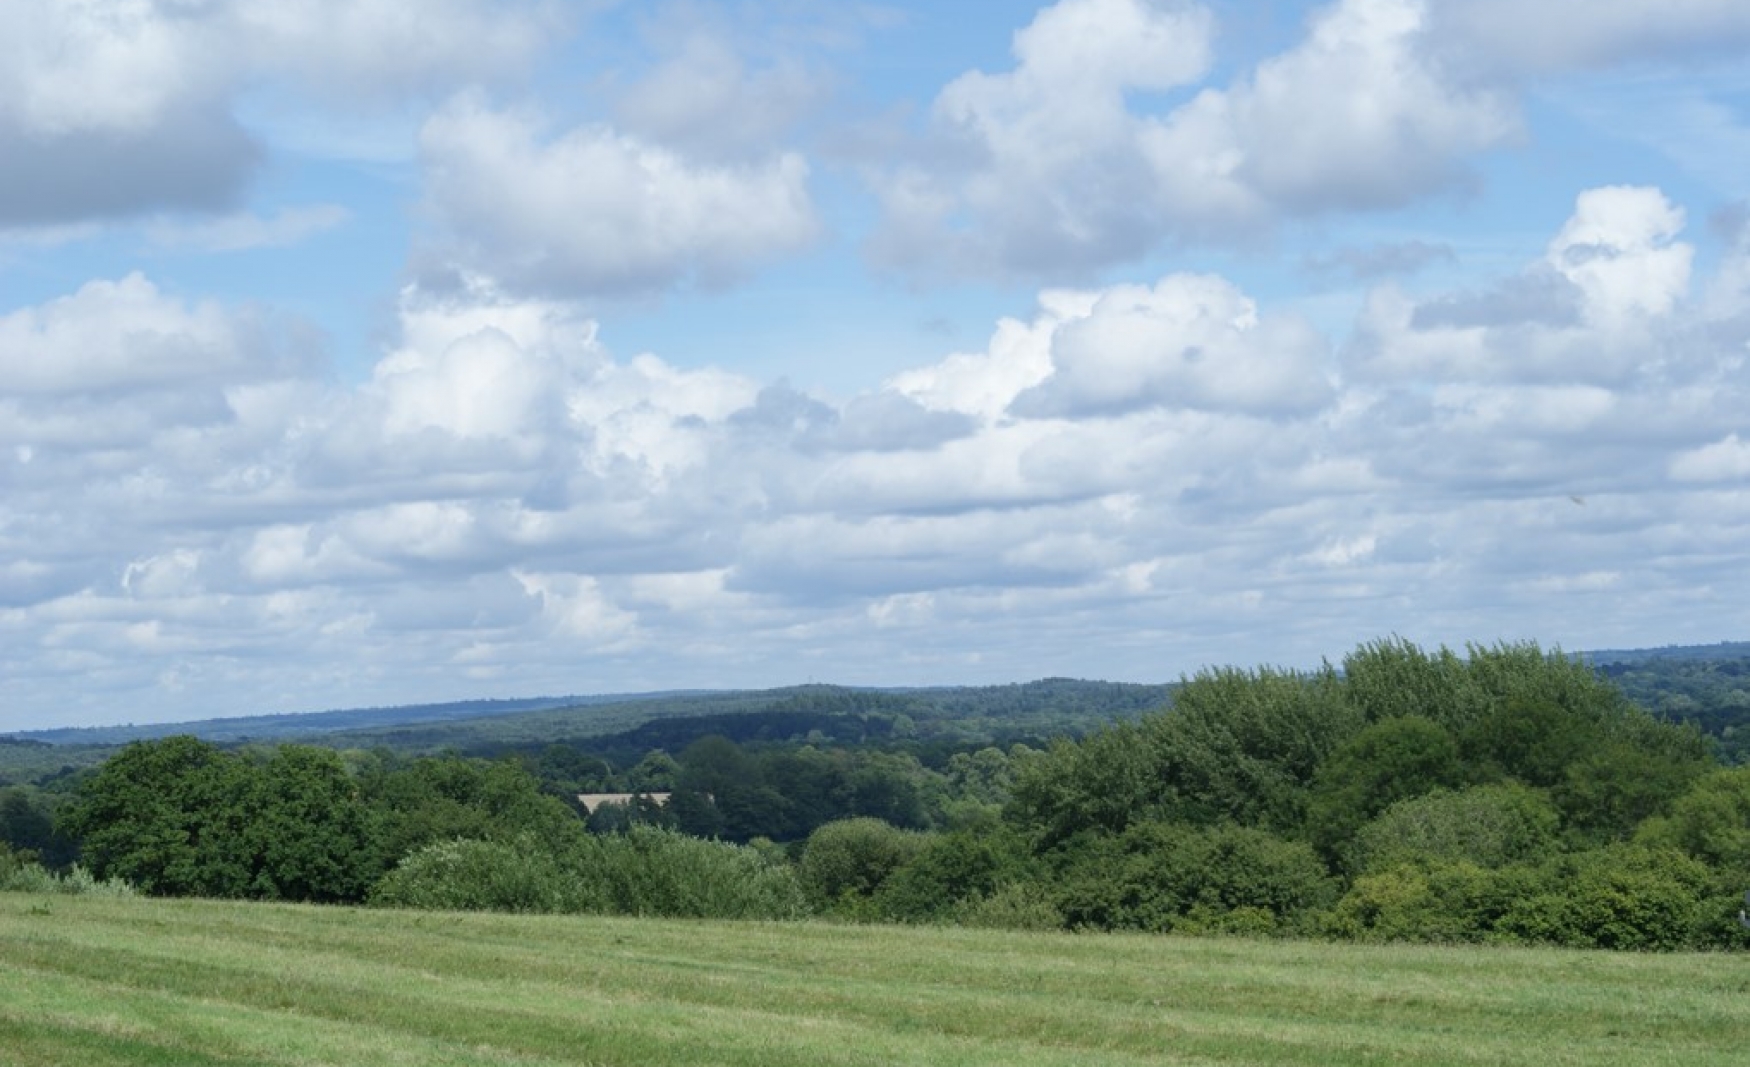 Wheatham Farm field view